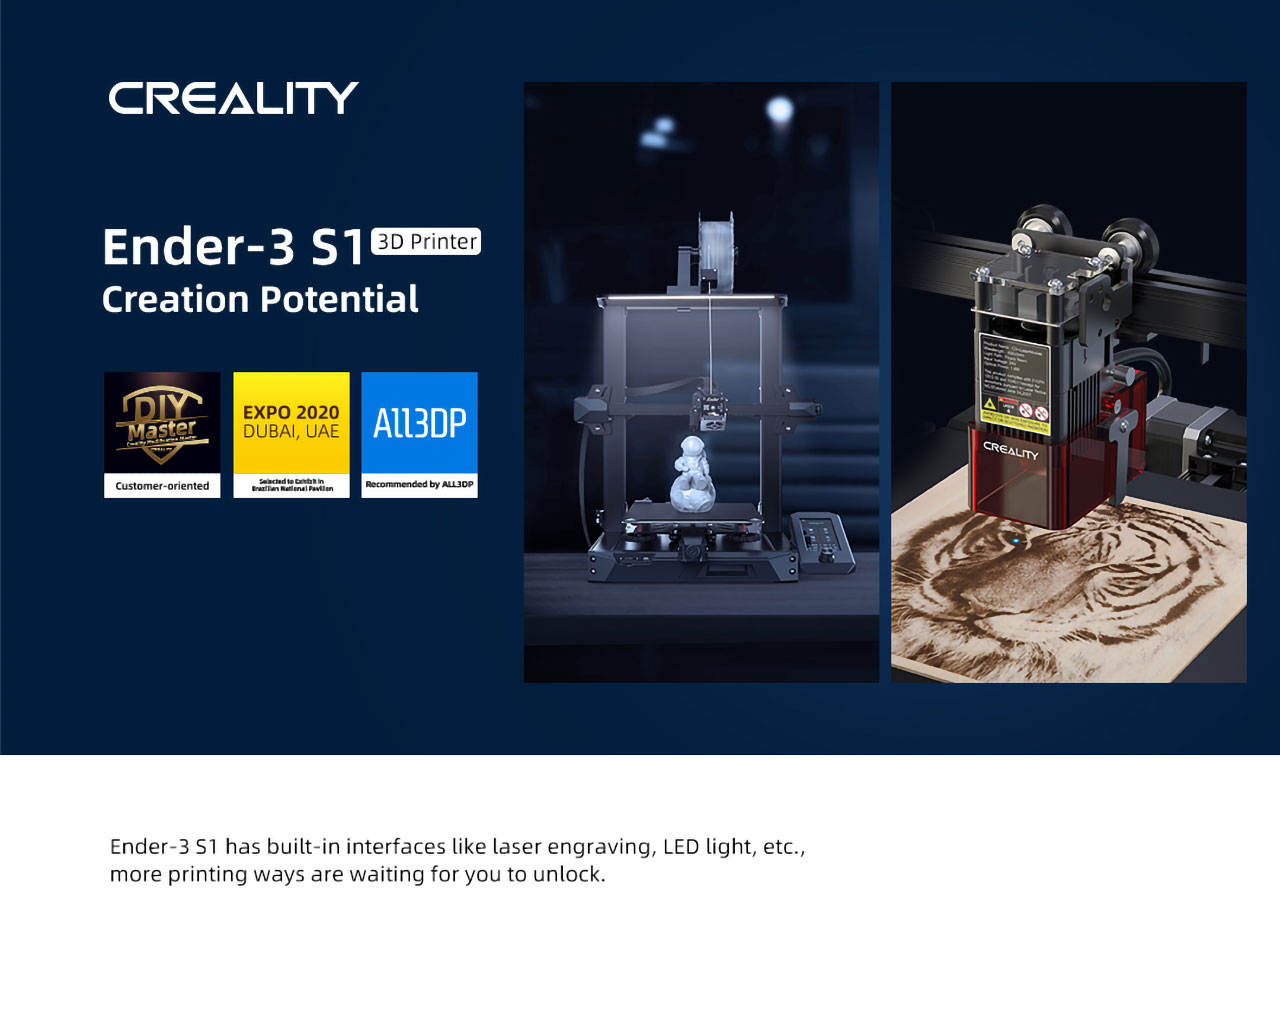 Meral Erden: Uygun Fiyata Yüksek Kaliteli 3D Yazıcı: Creality Ender-3 S1 5